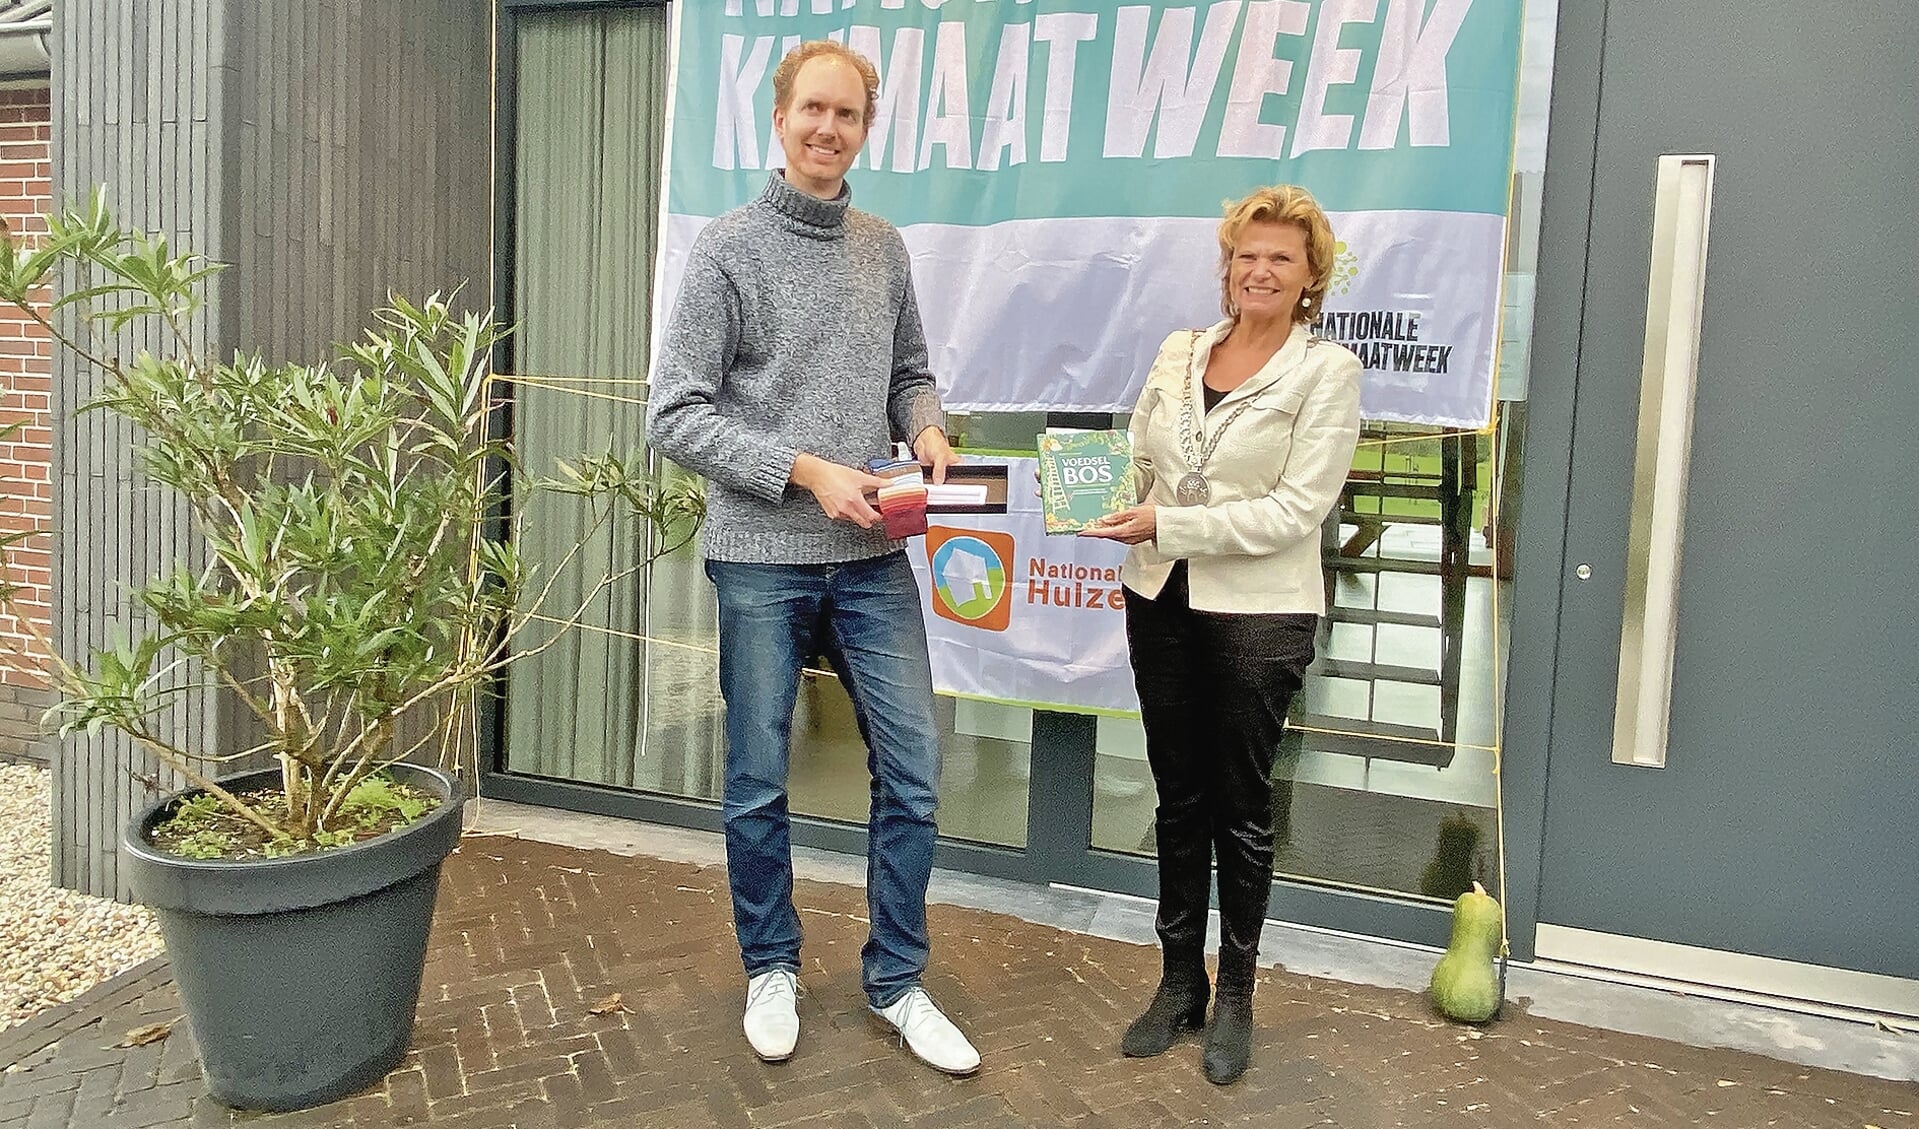 Klimaatburgemeester Matthijs Hombergen overhandigde burgemeester Petra van Hartskamp twee cadeaus.